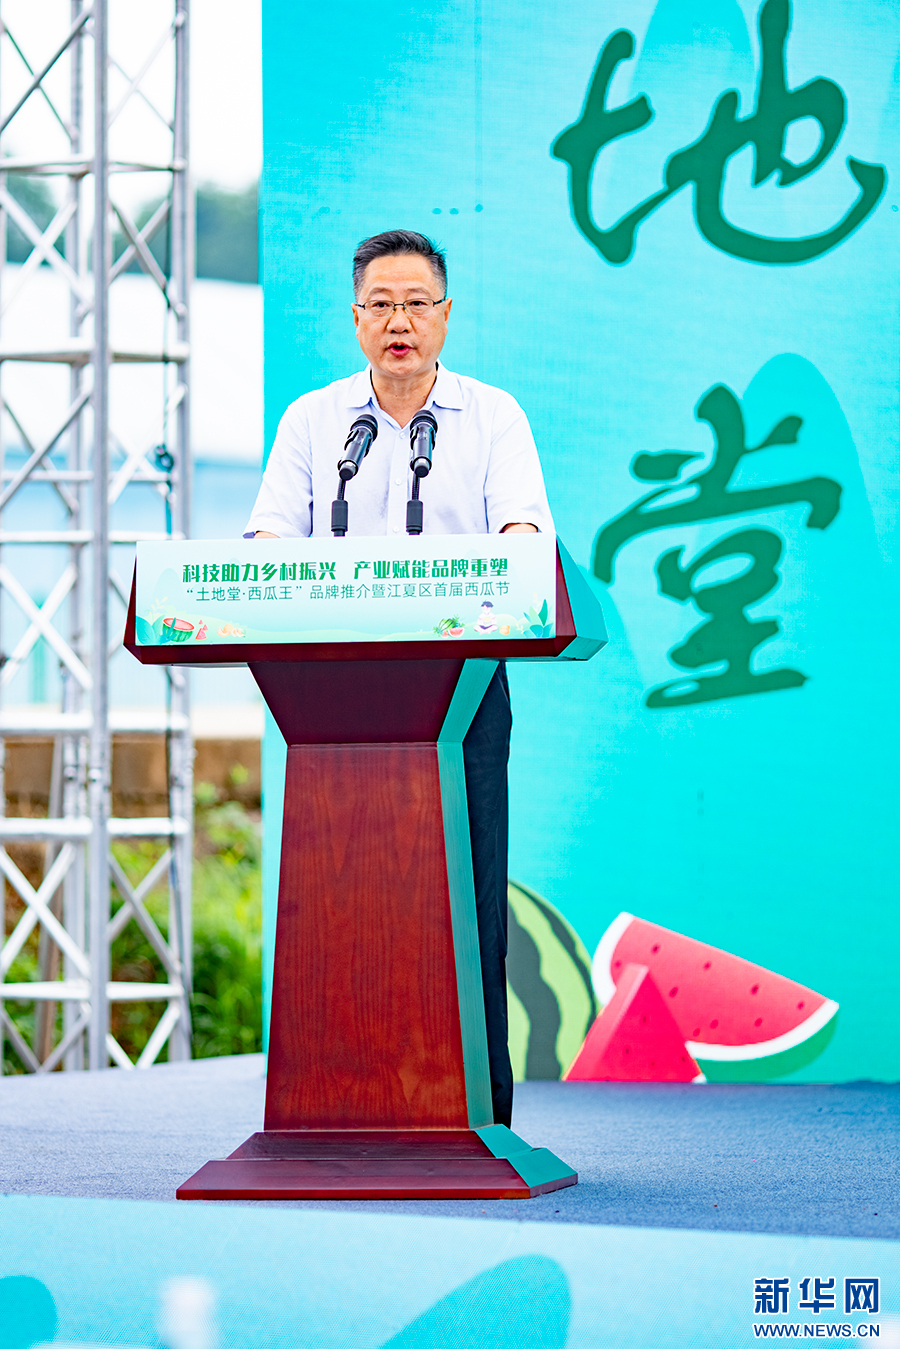 发展绿色特色西瓜生产 湖北武汉江夏首届西瓜节开幕